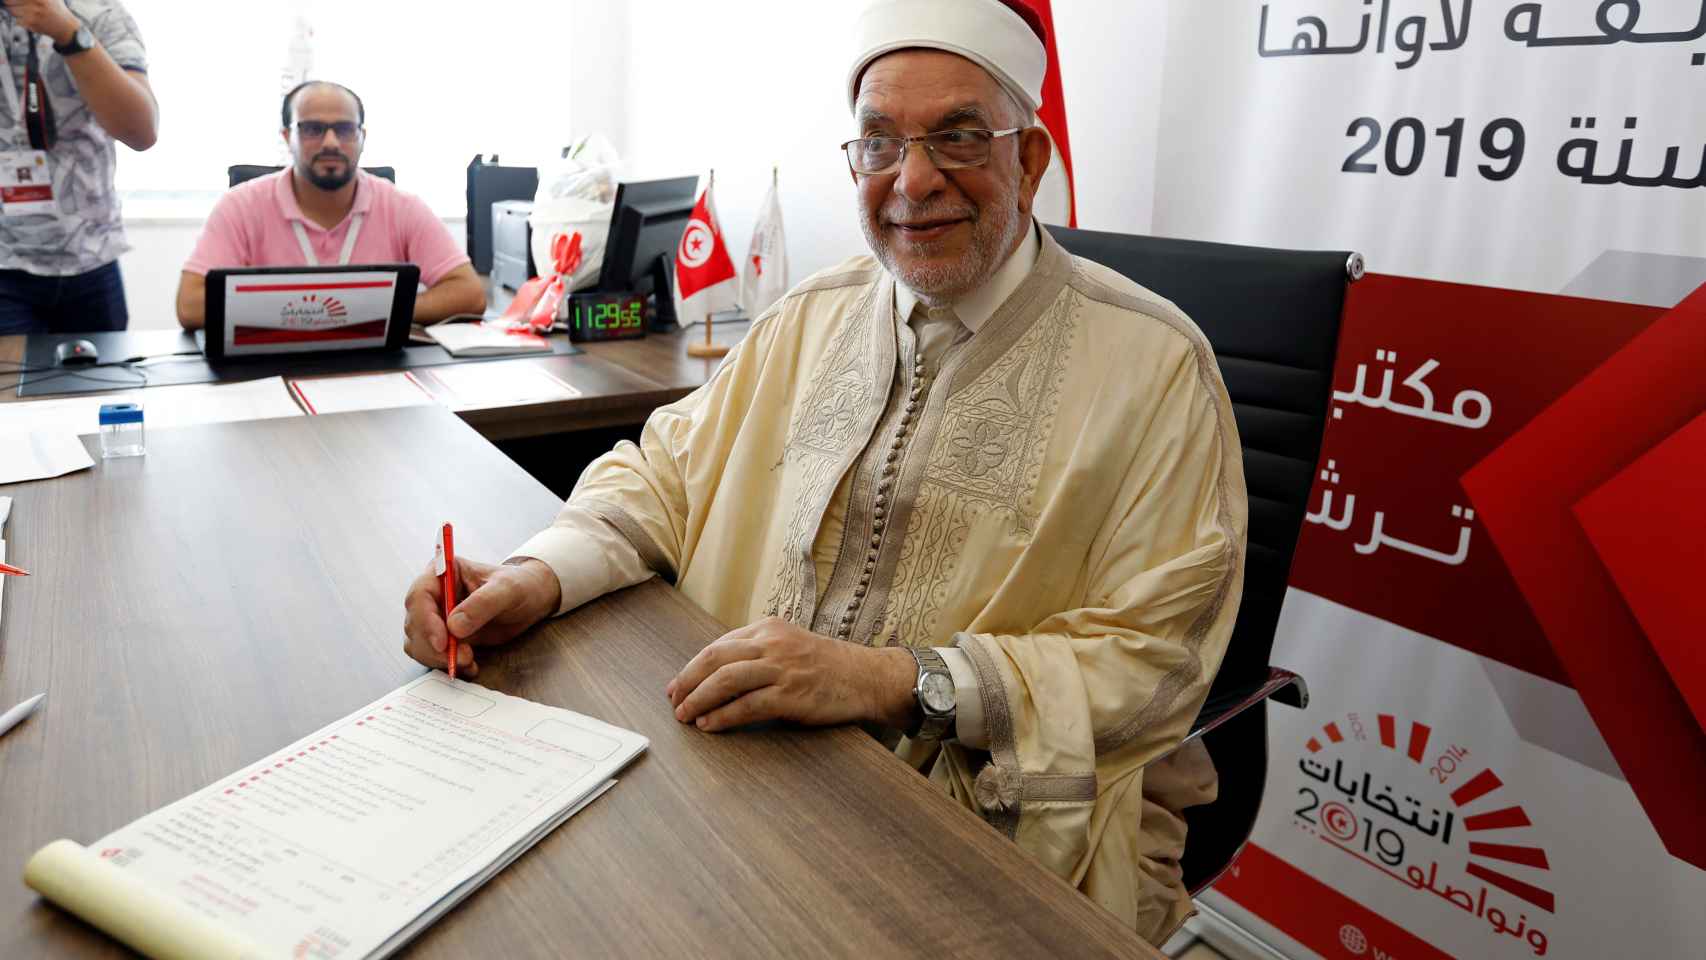 Abdelfatá Muru, del partido islamista moderado, presenta su candidatura.